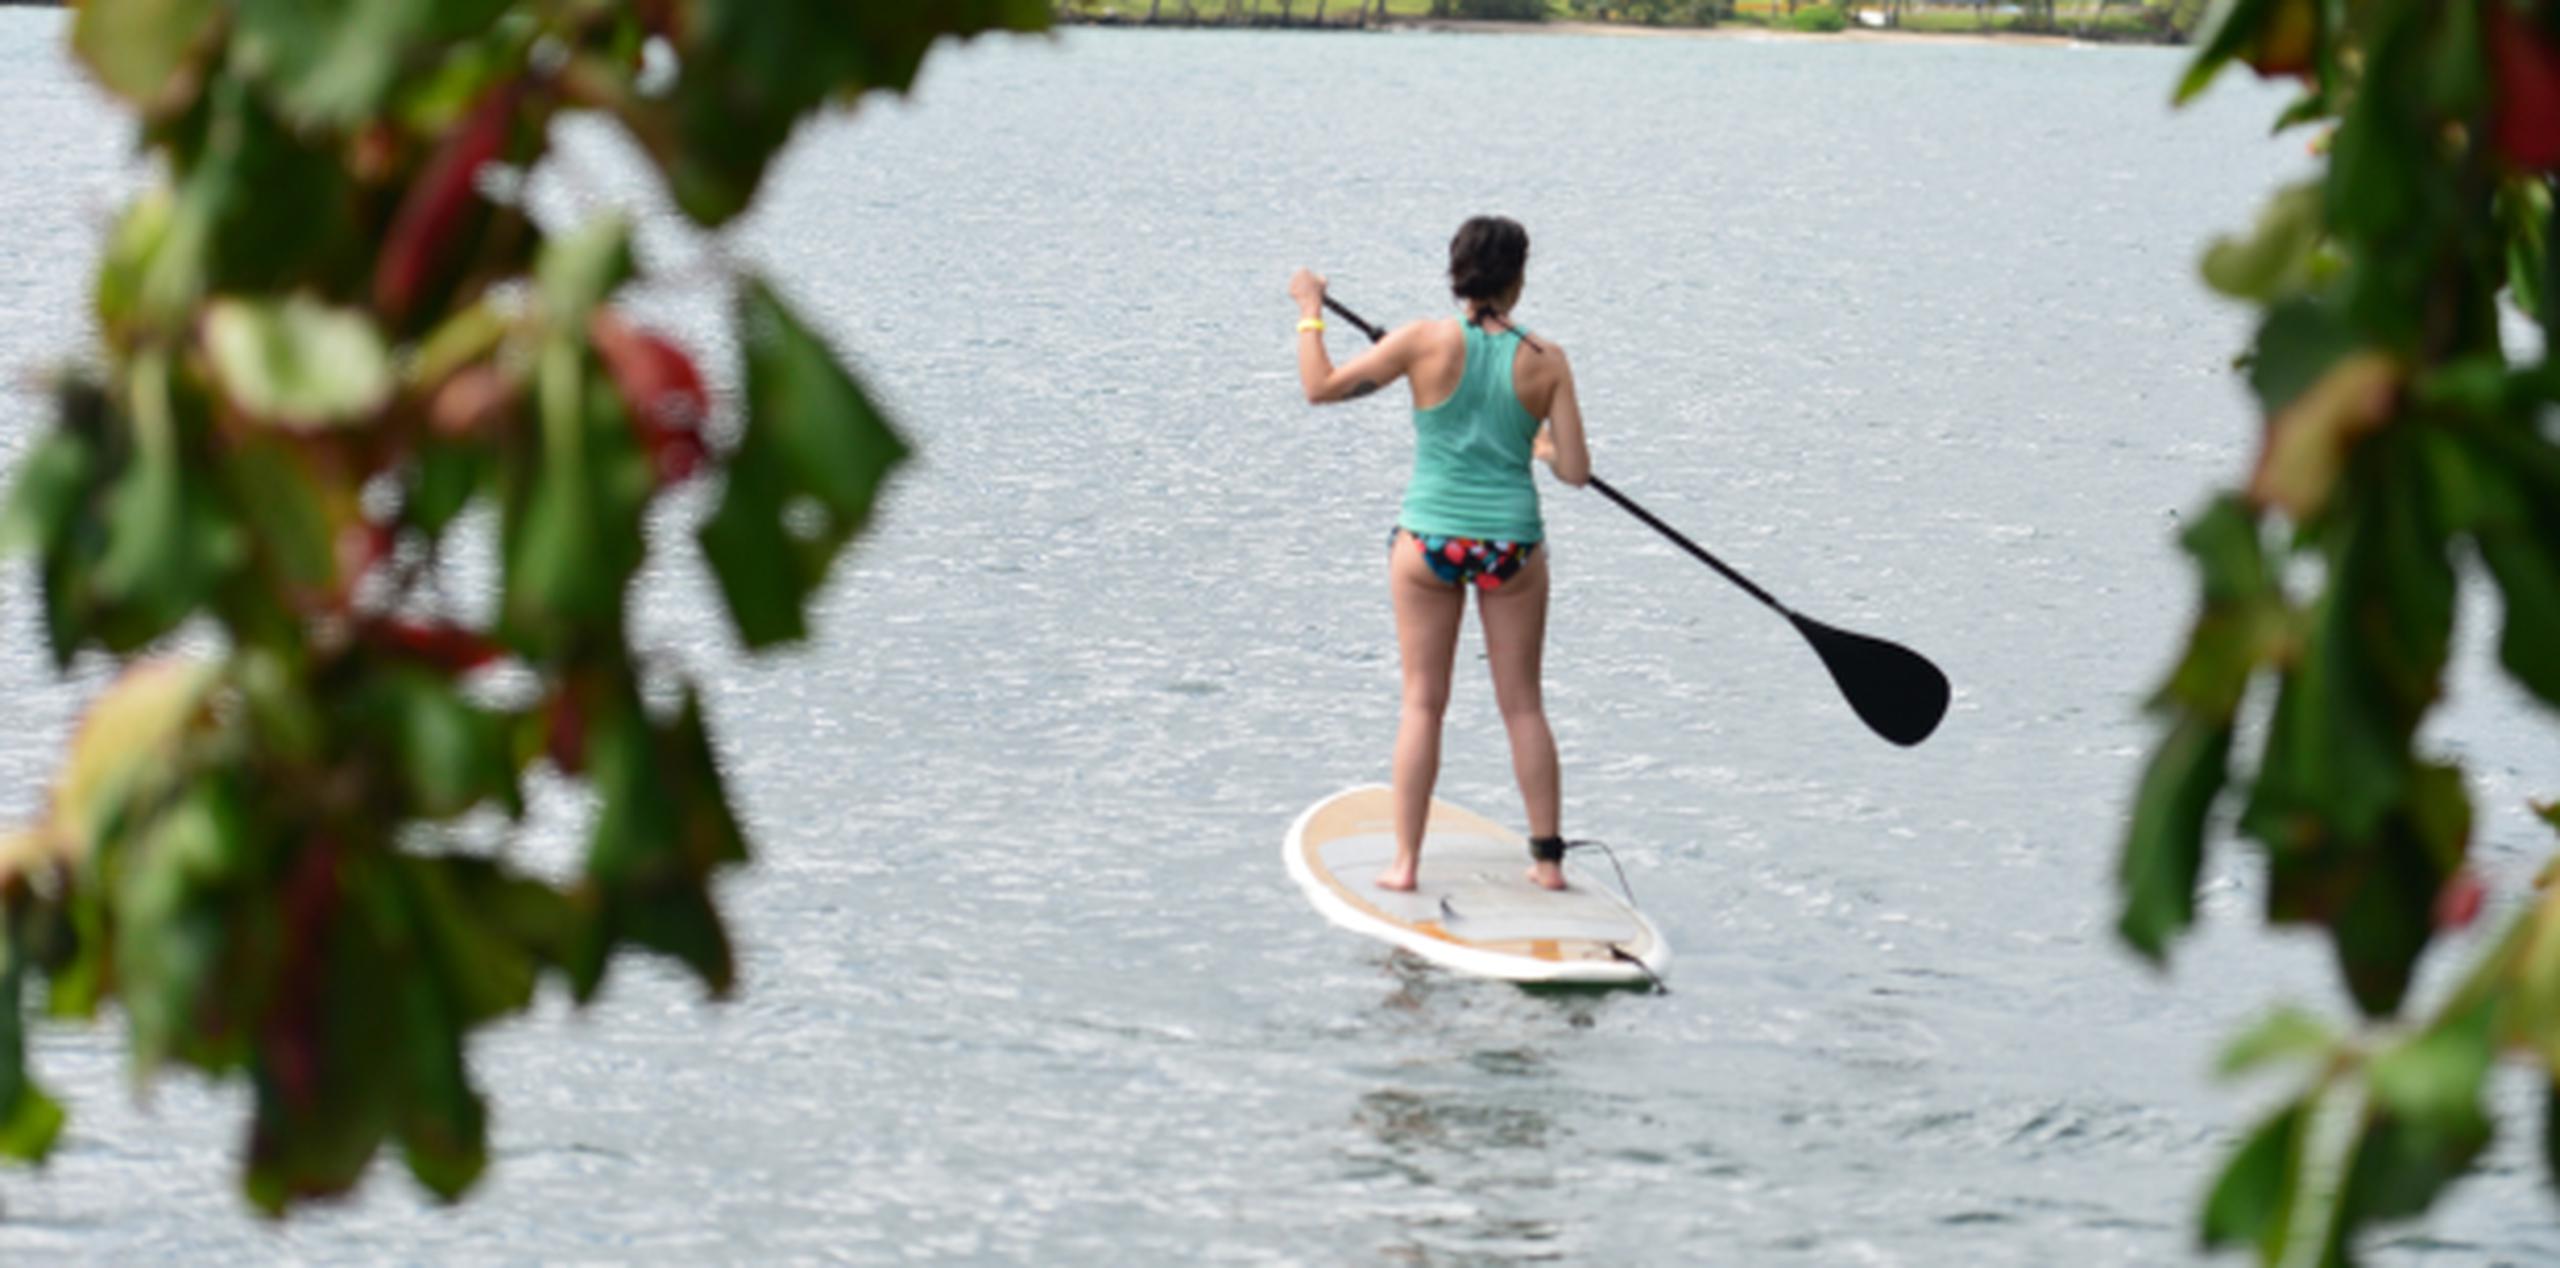 Fue gracias al yoga y a su práctica del "paddleboard", que Guerrero llevó ambas disciplinas a la Laguna de Condado, el cuerpo de agua con mayor diversidad de flora y fauna del Estuario de San Juan. (Archivo/luis.alcaladelolmo@gfrmedia.com)